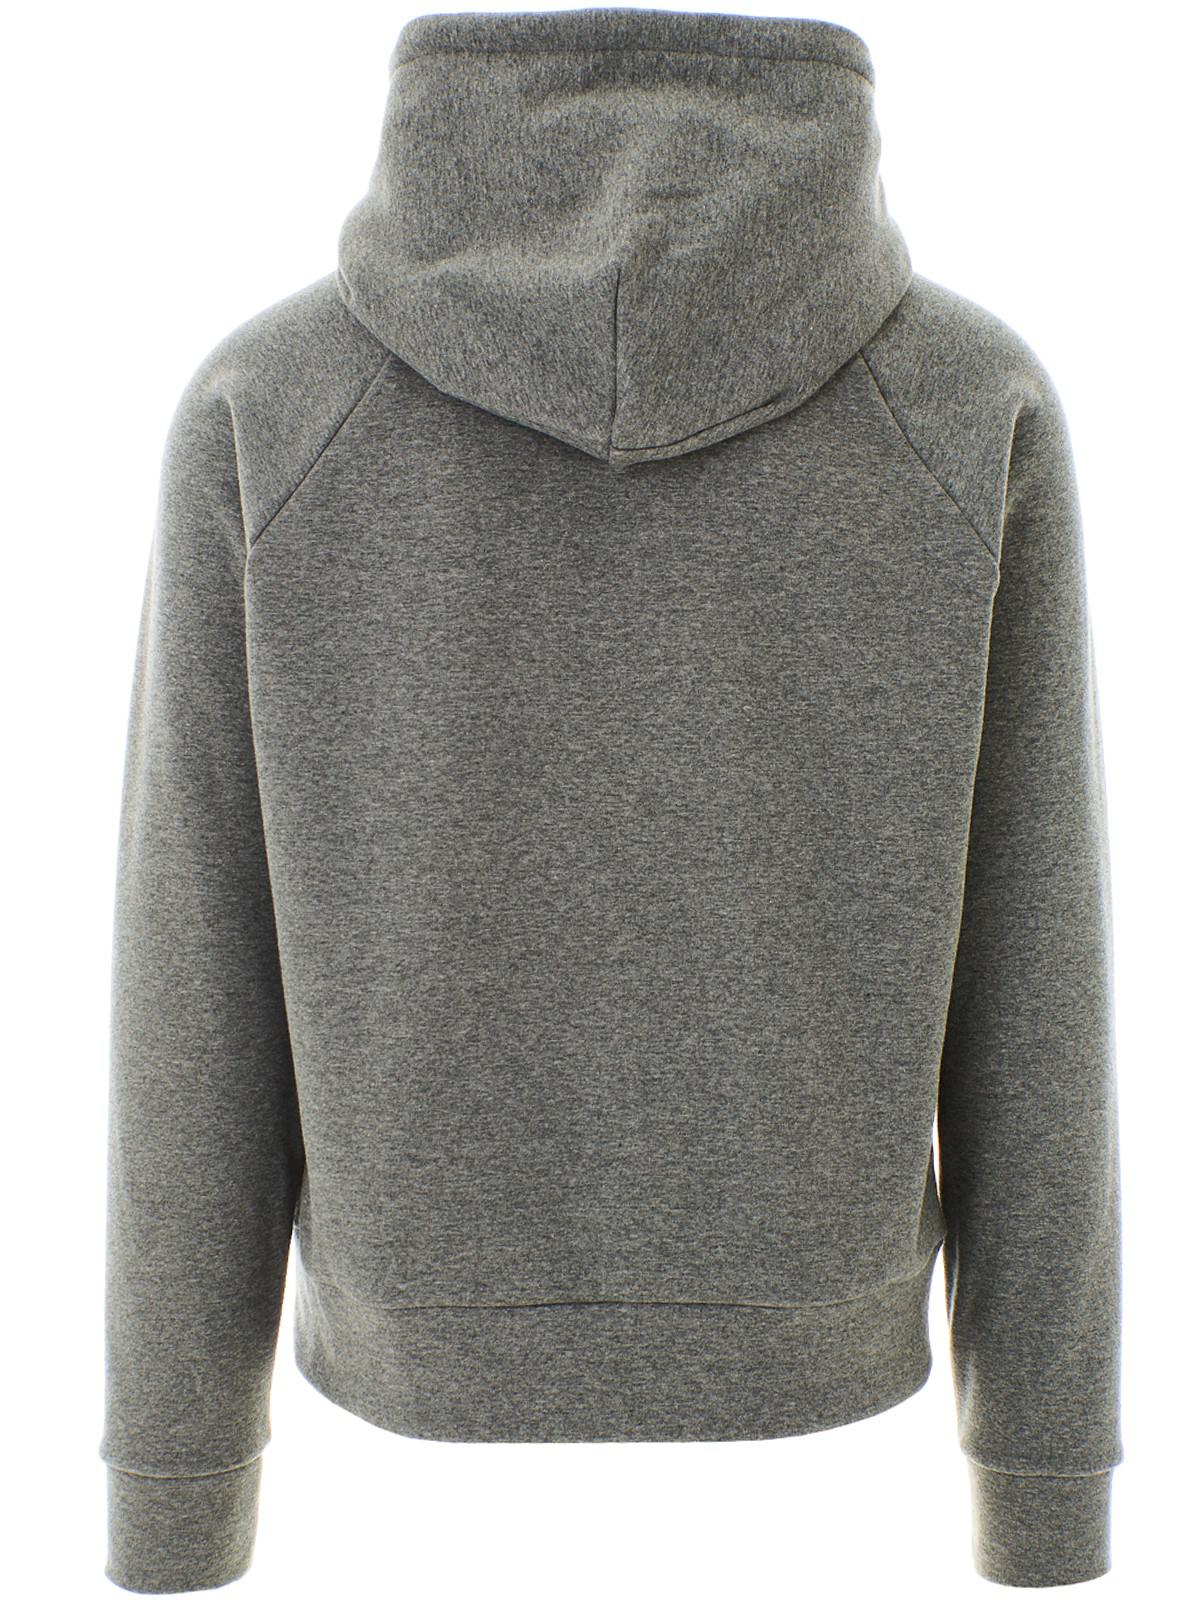 Lyst - Moncler Grenoble Oversized Logo Hooded Sweatshirt in Gray for Men